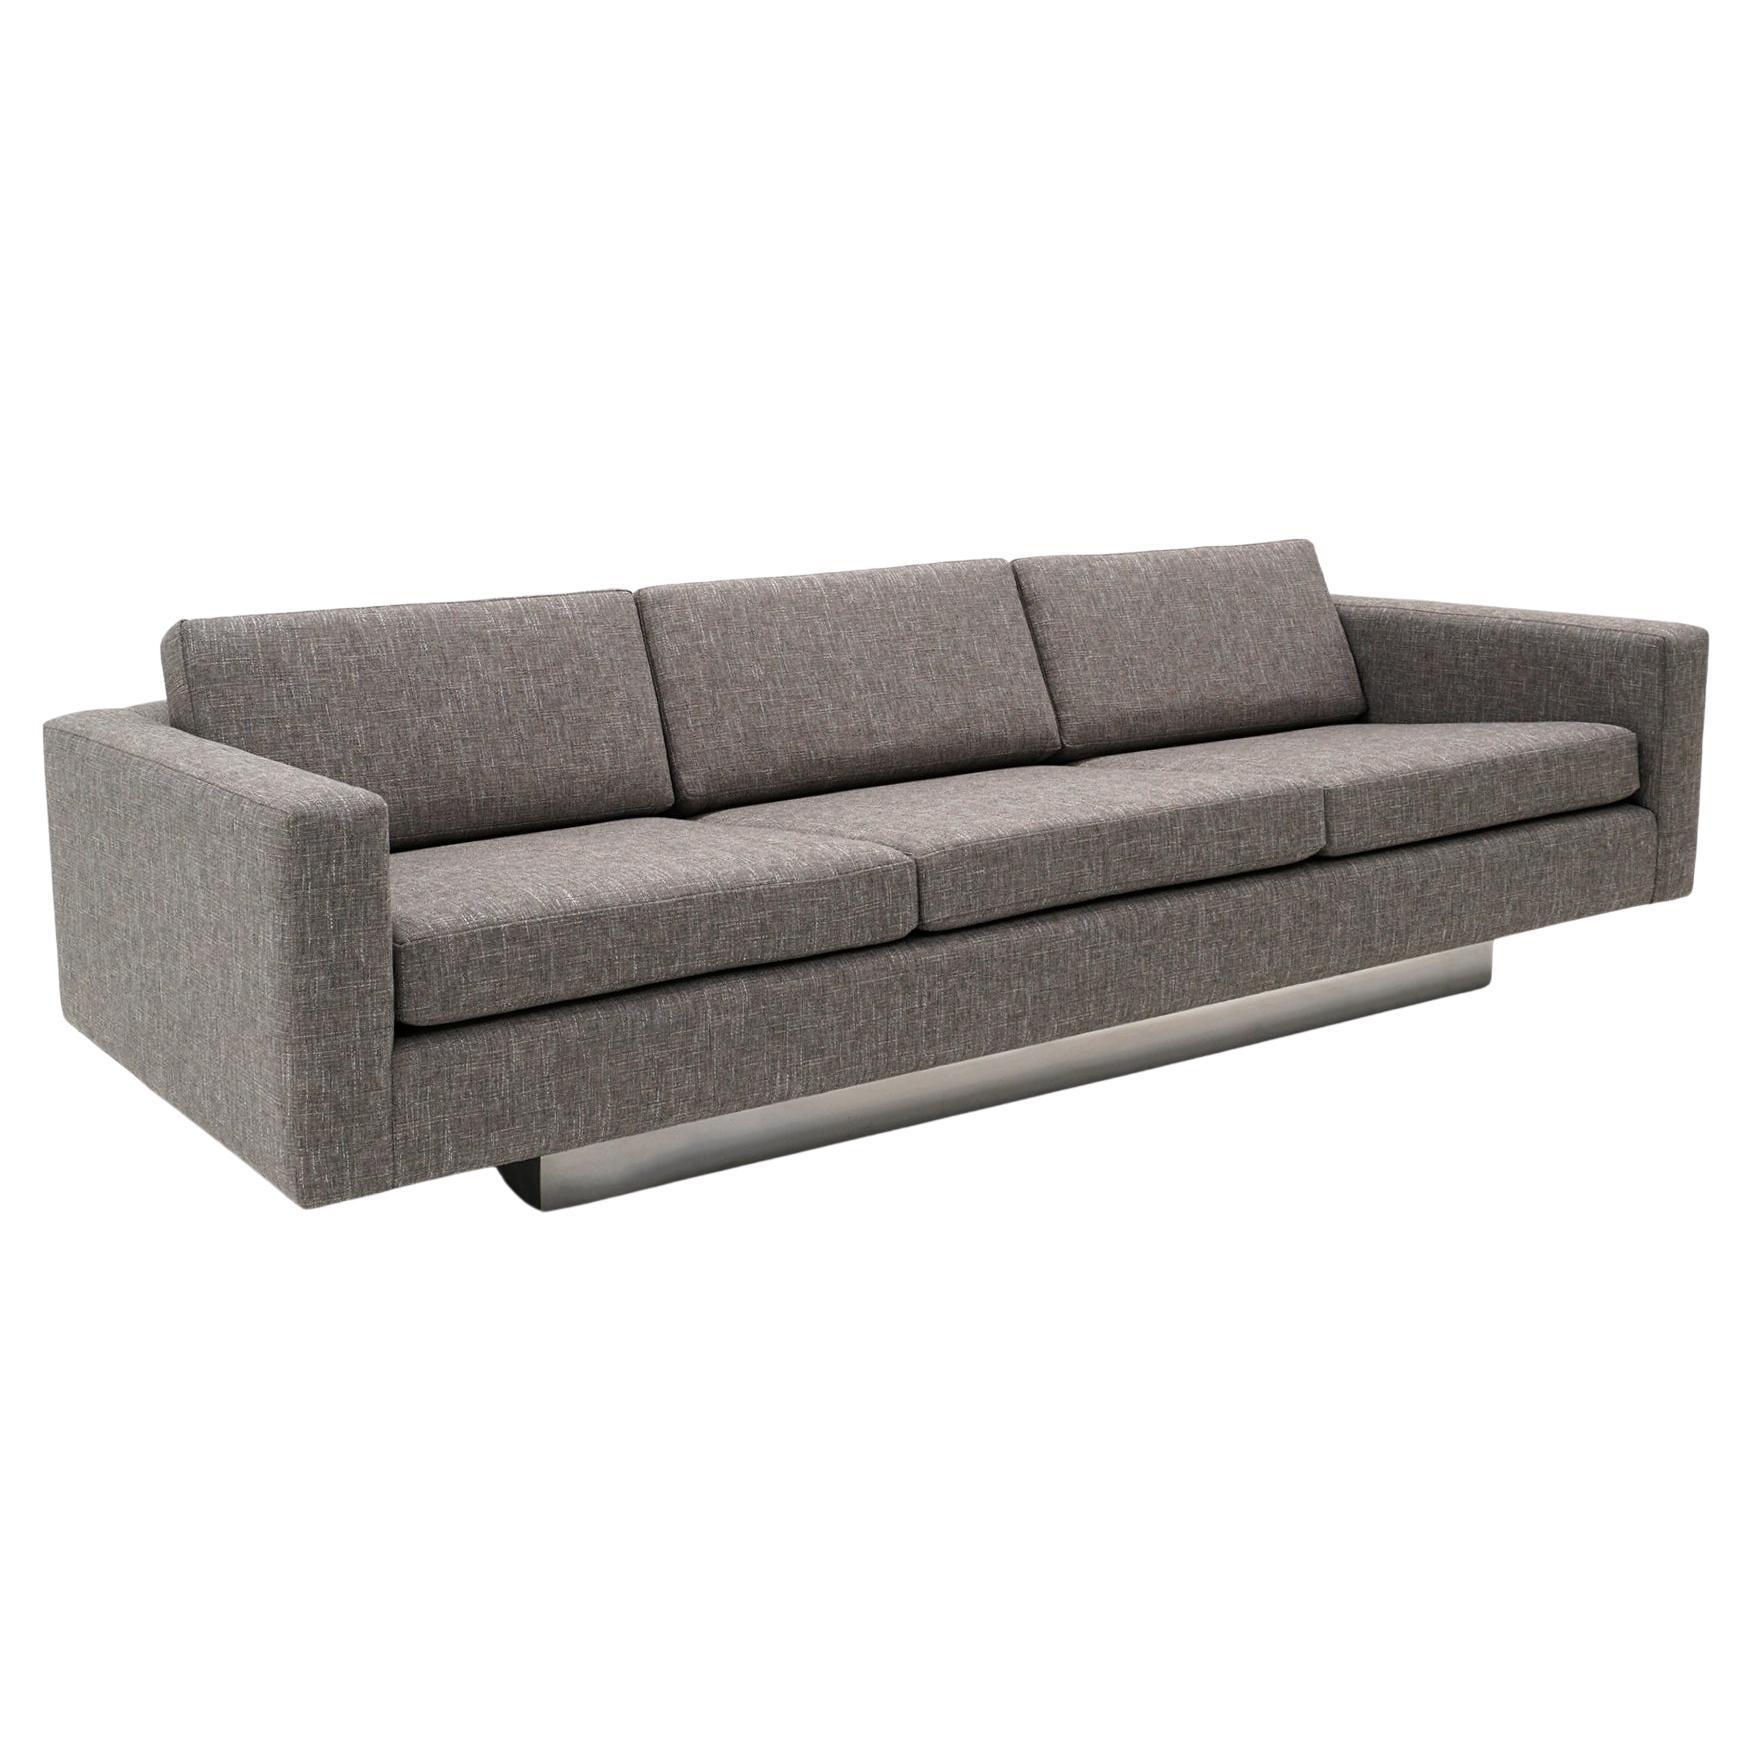 Fachmännisch neu gepolstertes mittelgraues Sofa mit drei Sitzen und Armlehnen, das Harvey Probber zugeschrieben wird.  Ähnlich wie die Entwürfe von Milo Baughman.  Sehr hochwertige Konstruktion, schwer, und sehr komfortabel.  Das Sofa schwebt auf